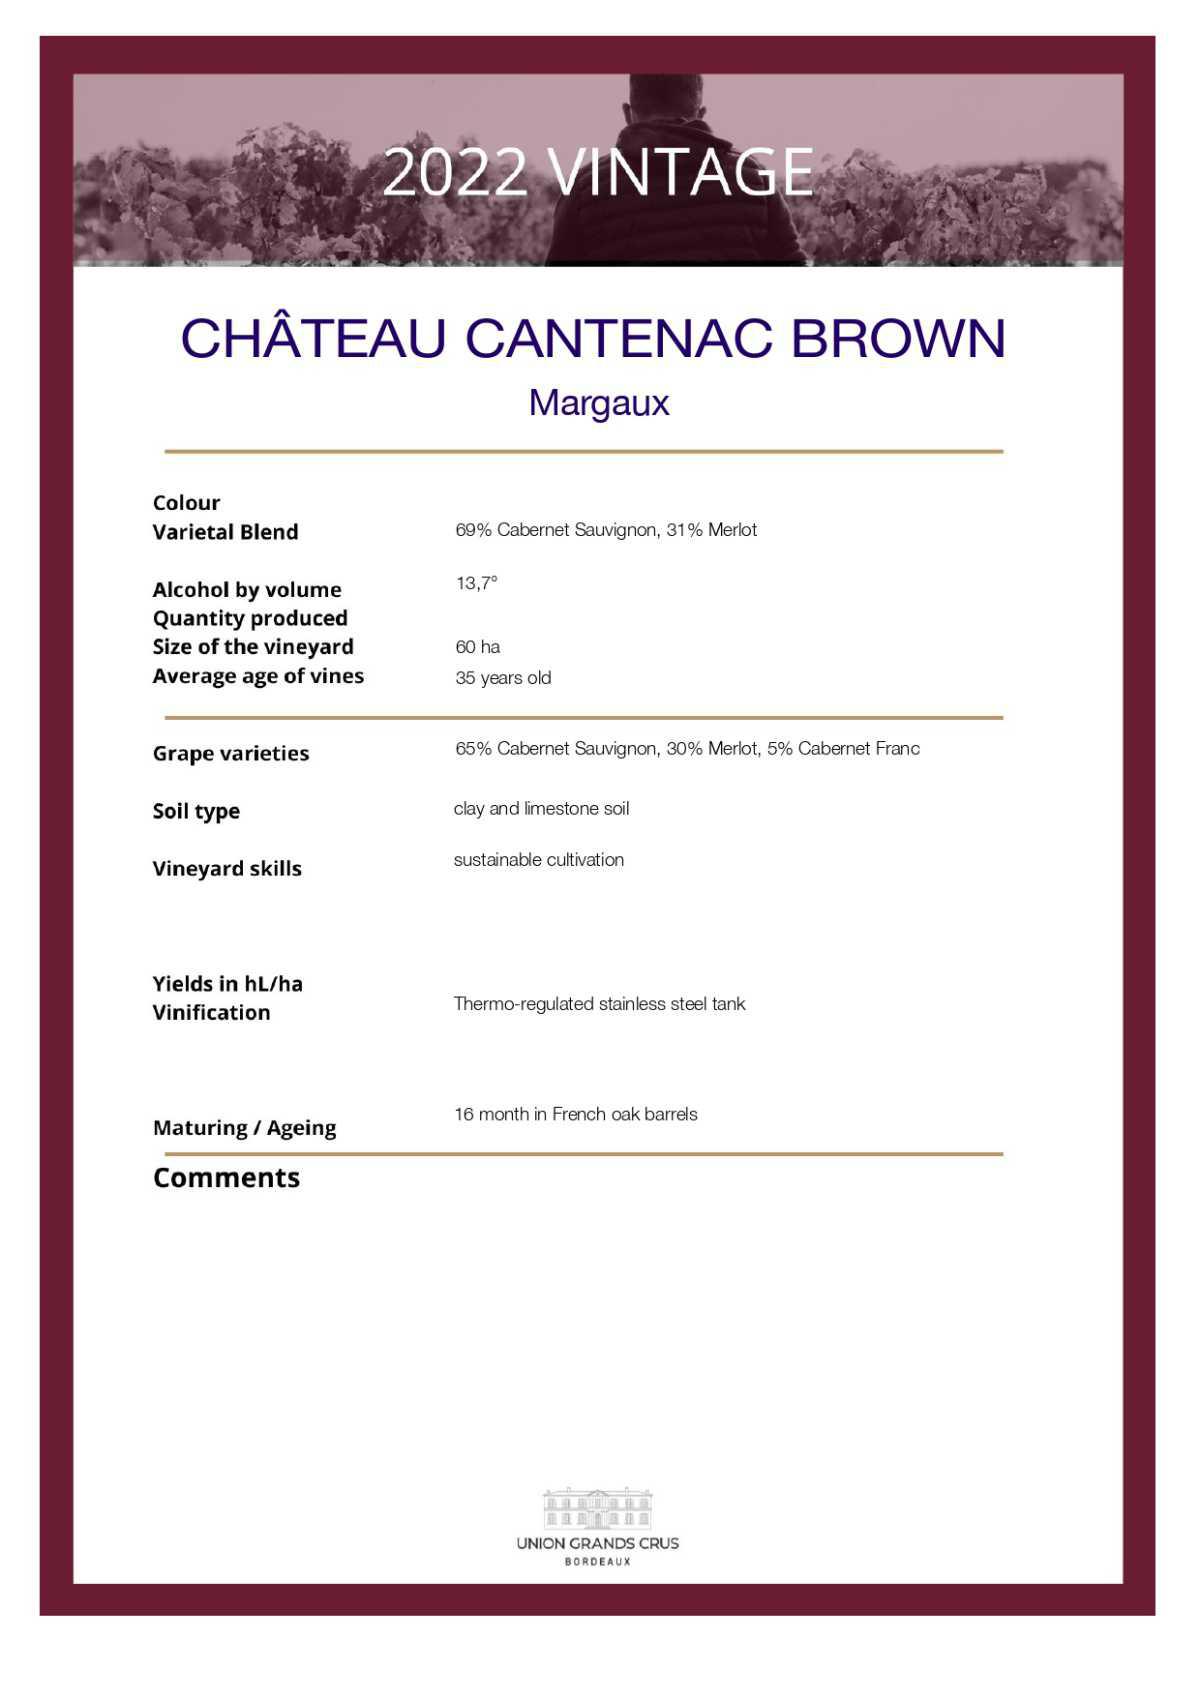  Château Cantenac Brown